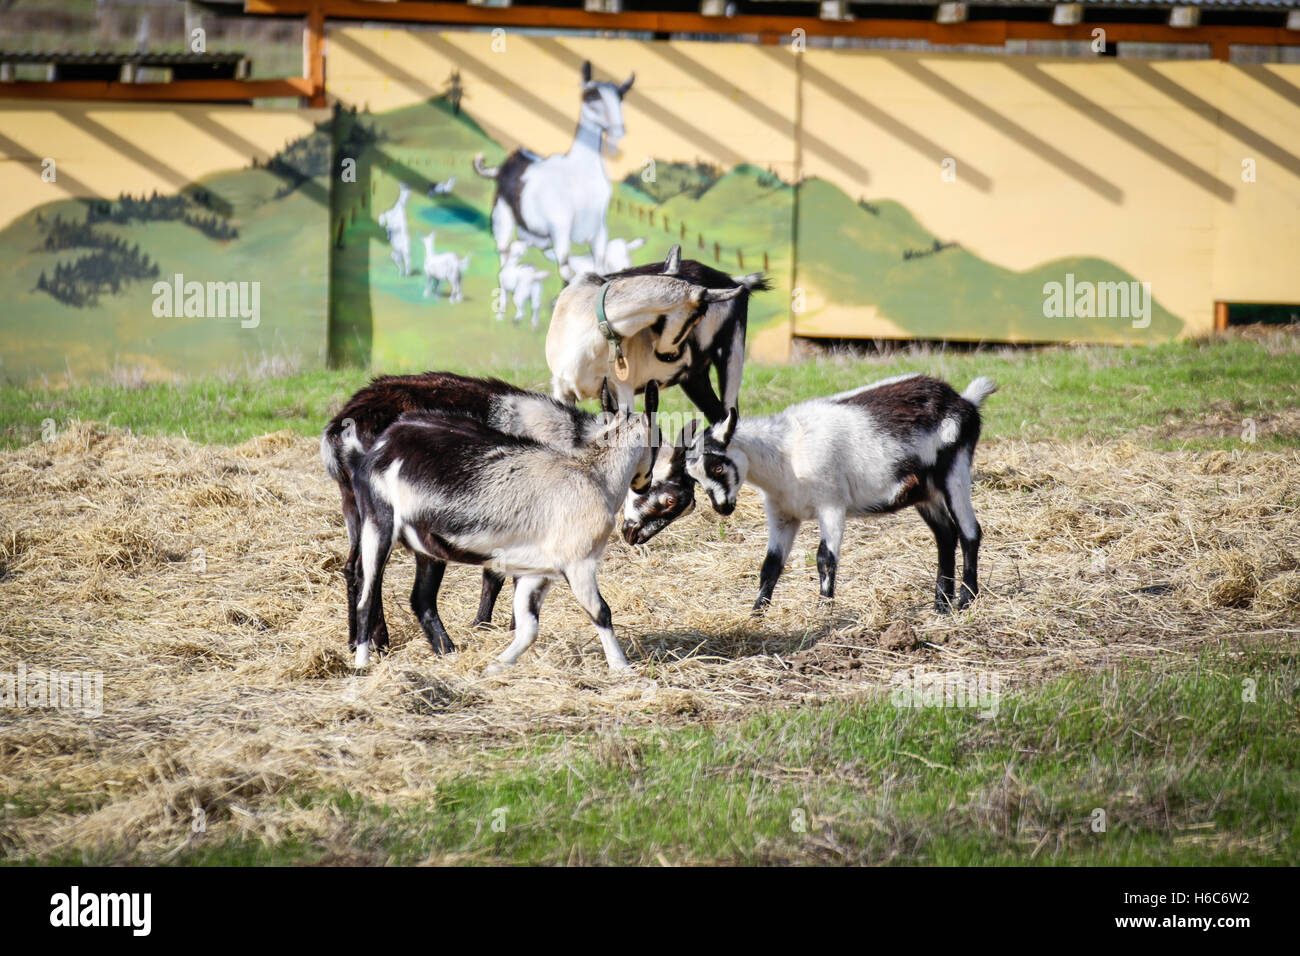 Goats playing outside Stock Photo